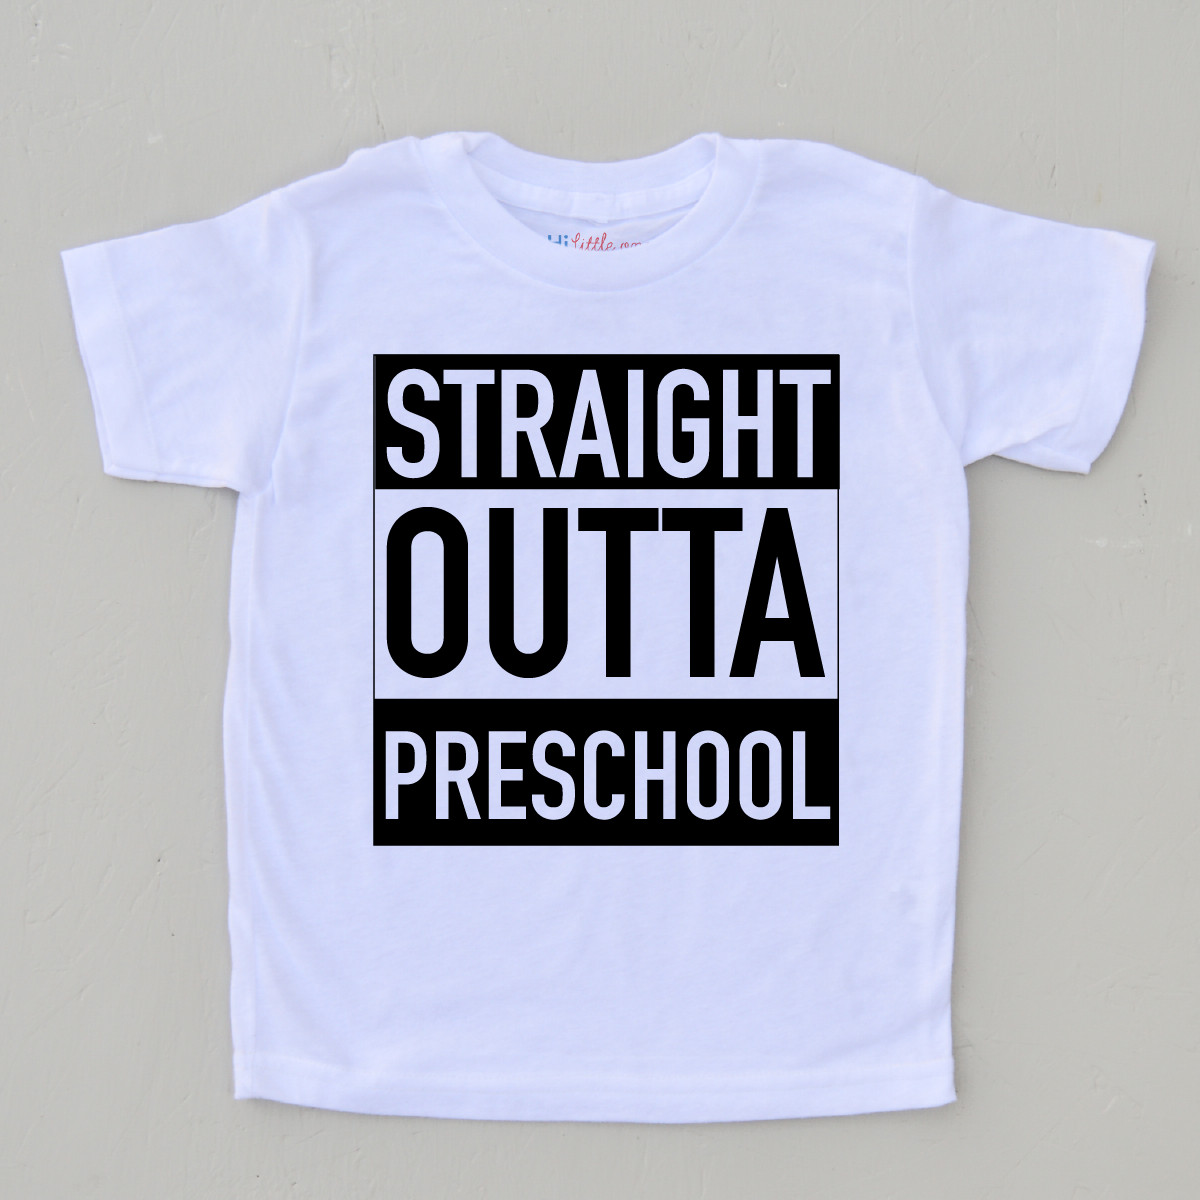 Preschool T Shirt Ideas
 Straight Outta Preschool T shirt